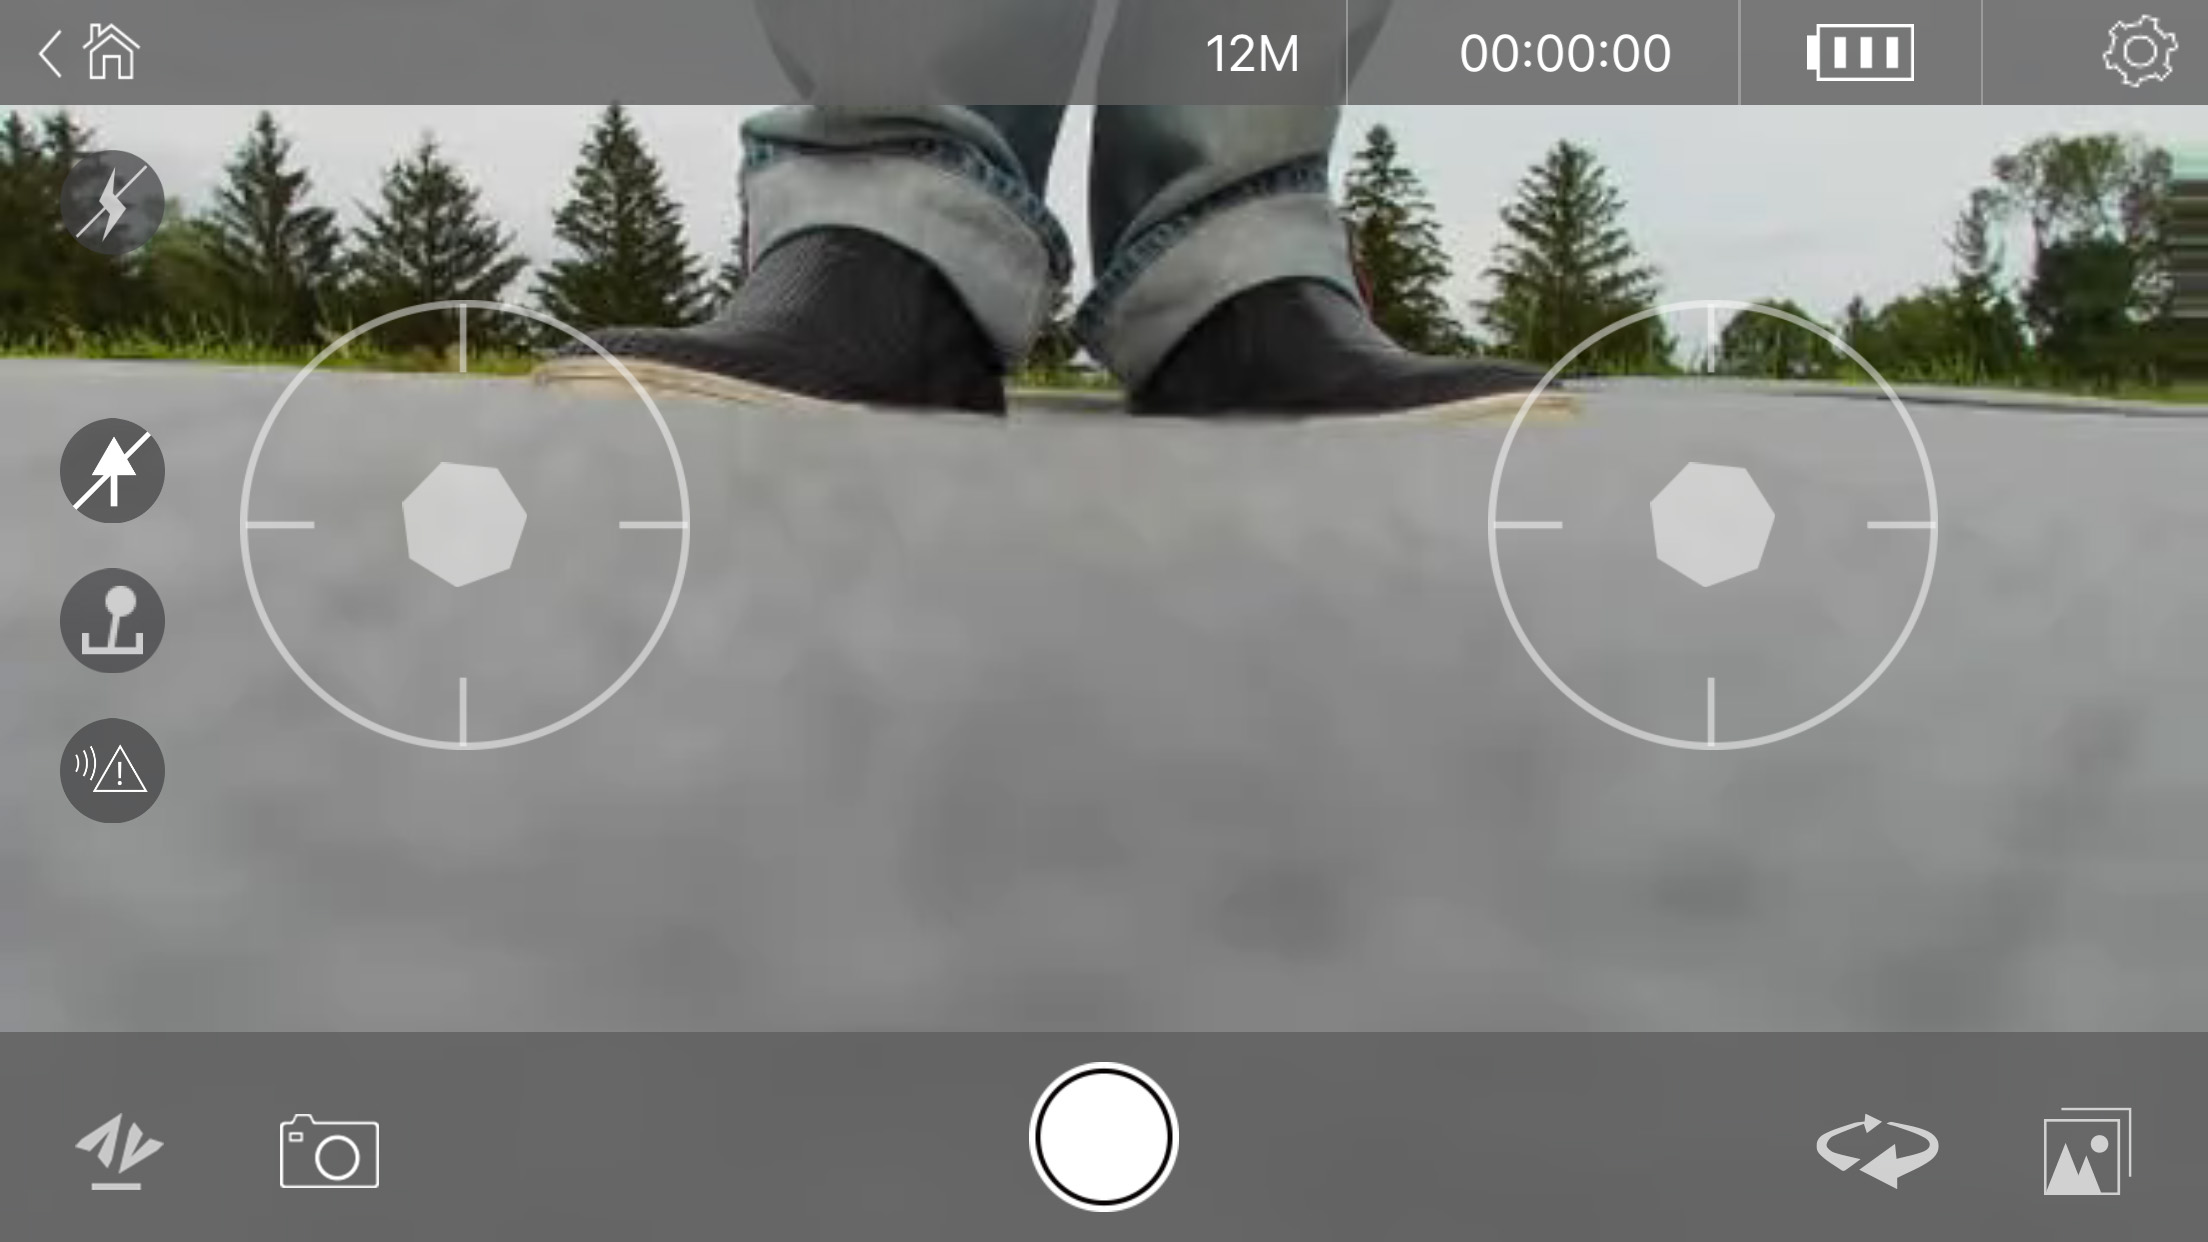 Rova selfie drone screenshot